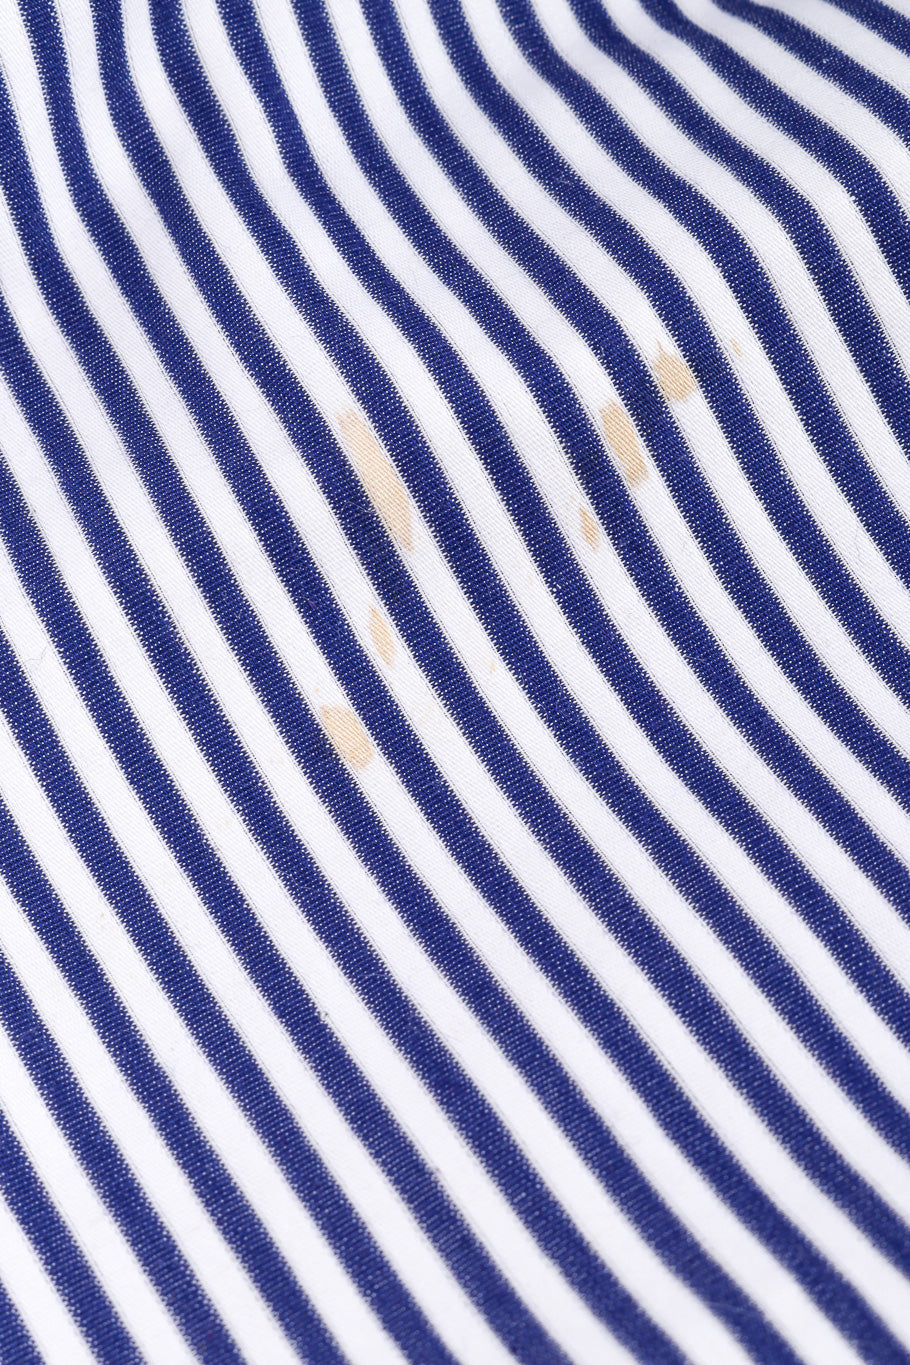 Vintage Yves Saint Laurent Sailor Stripe Corset Dress stain near front hem closeup @Recessla